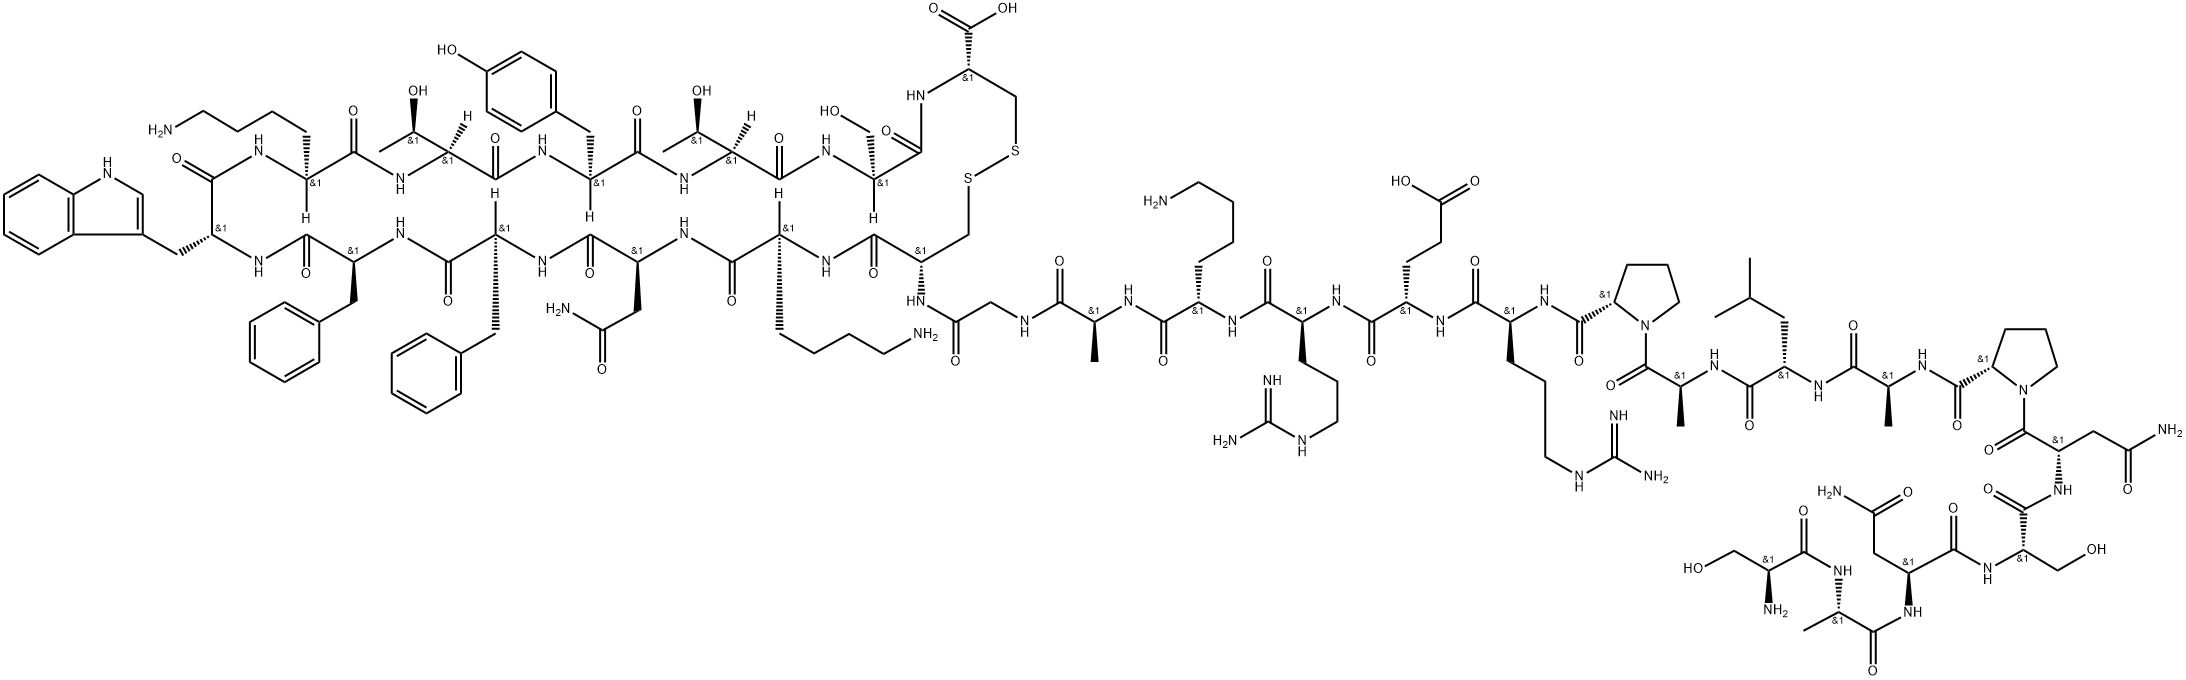 (LEU8,D-TRP22,TYR25)-SOMATOSTATIN 28 Struktur